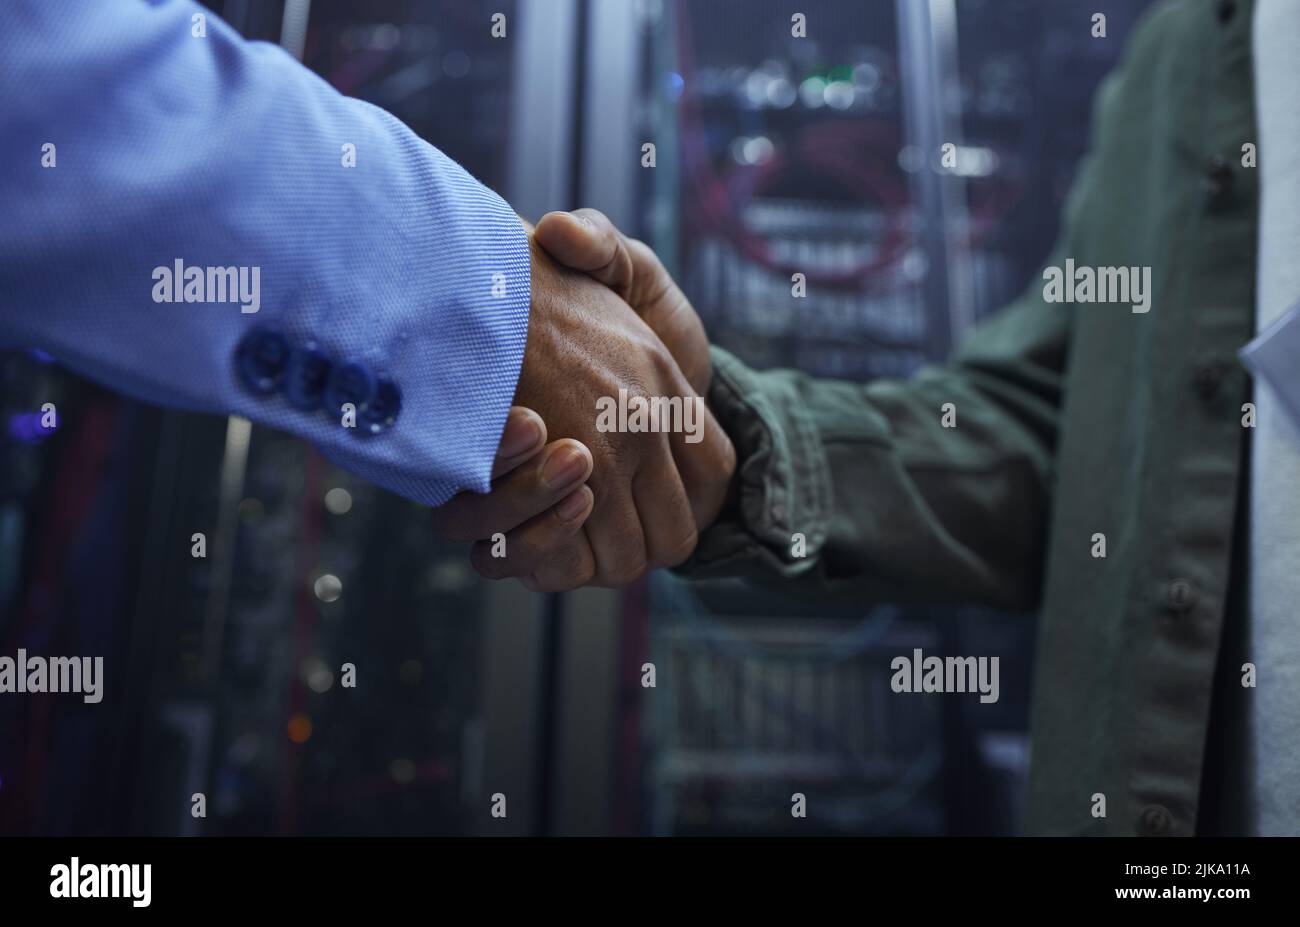 Me complace ayudar. Dos irreconocibles agentes masculinos de soporte DE TI se dan la mano en una sala oscura de servidores de red. Foto de stock